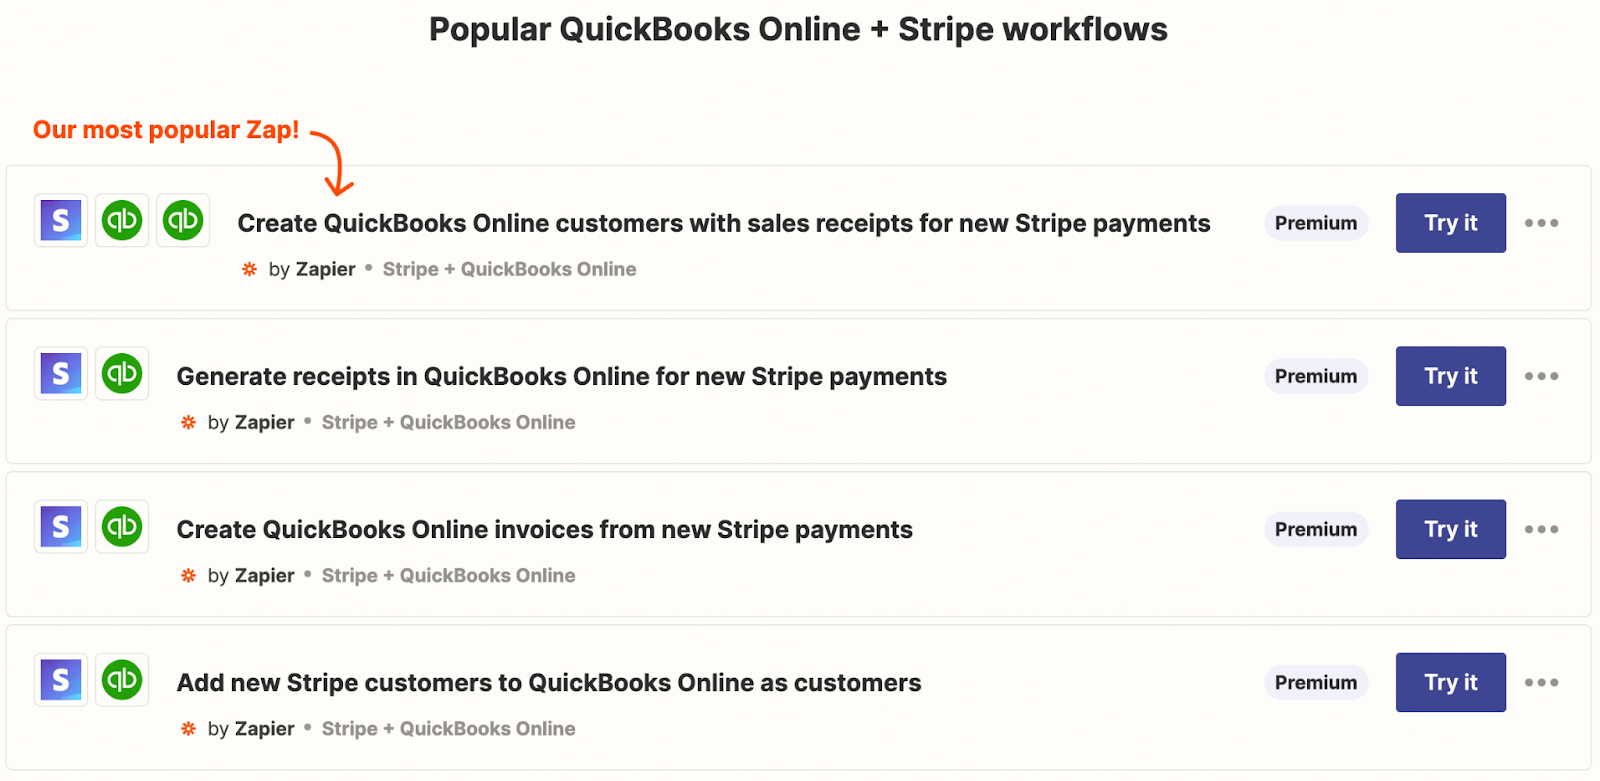 Popular QuickBooks Online and Stripe workflows